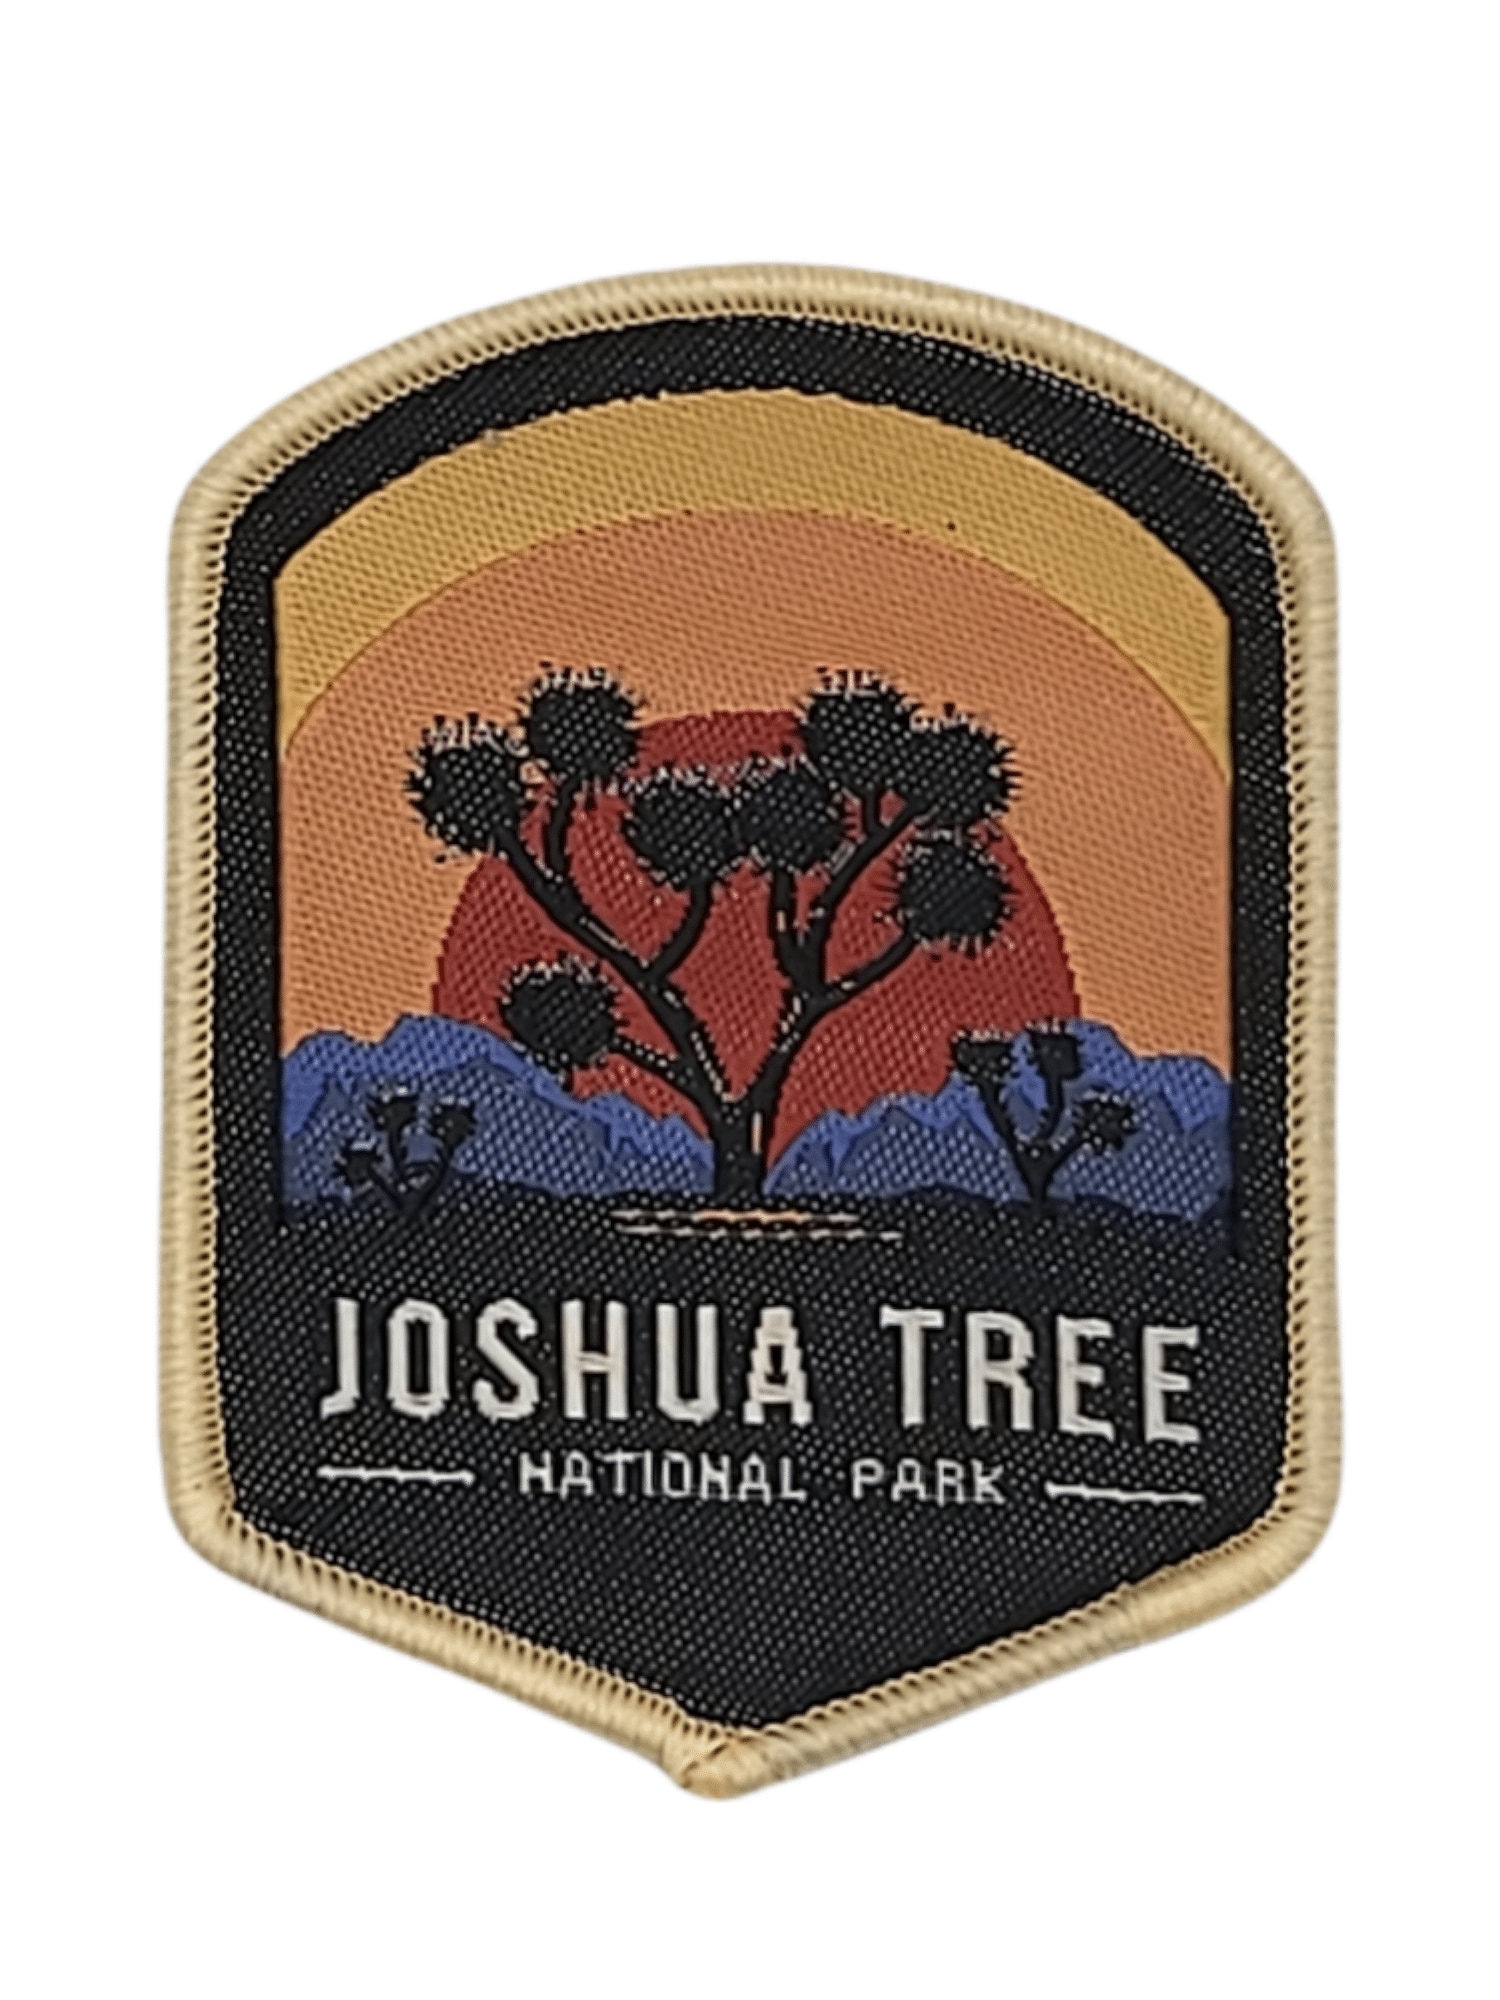 Joshua Tree National Park Aufnäher/Patch von HatsPatches